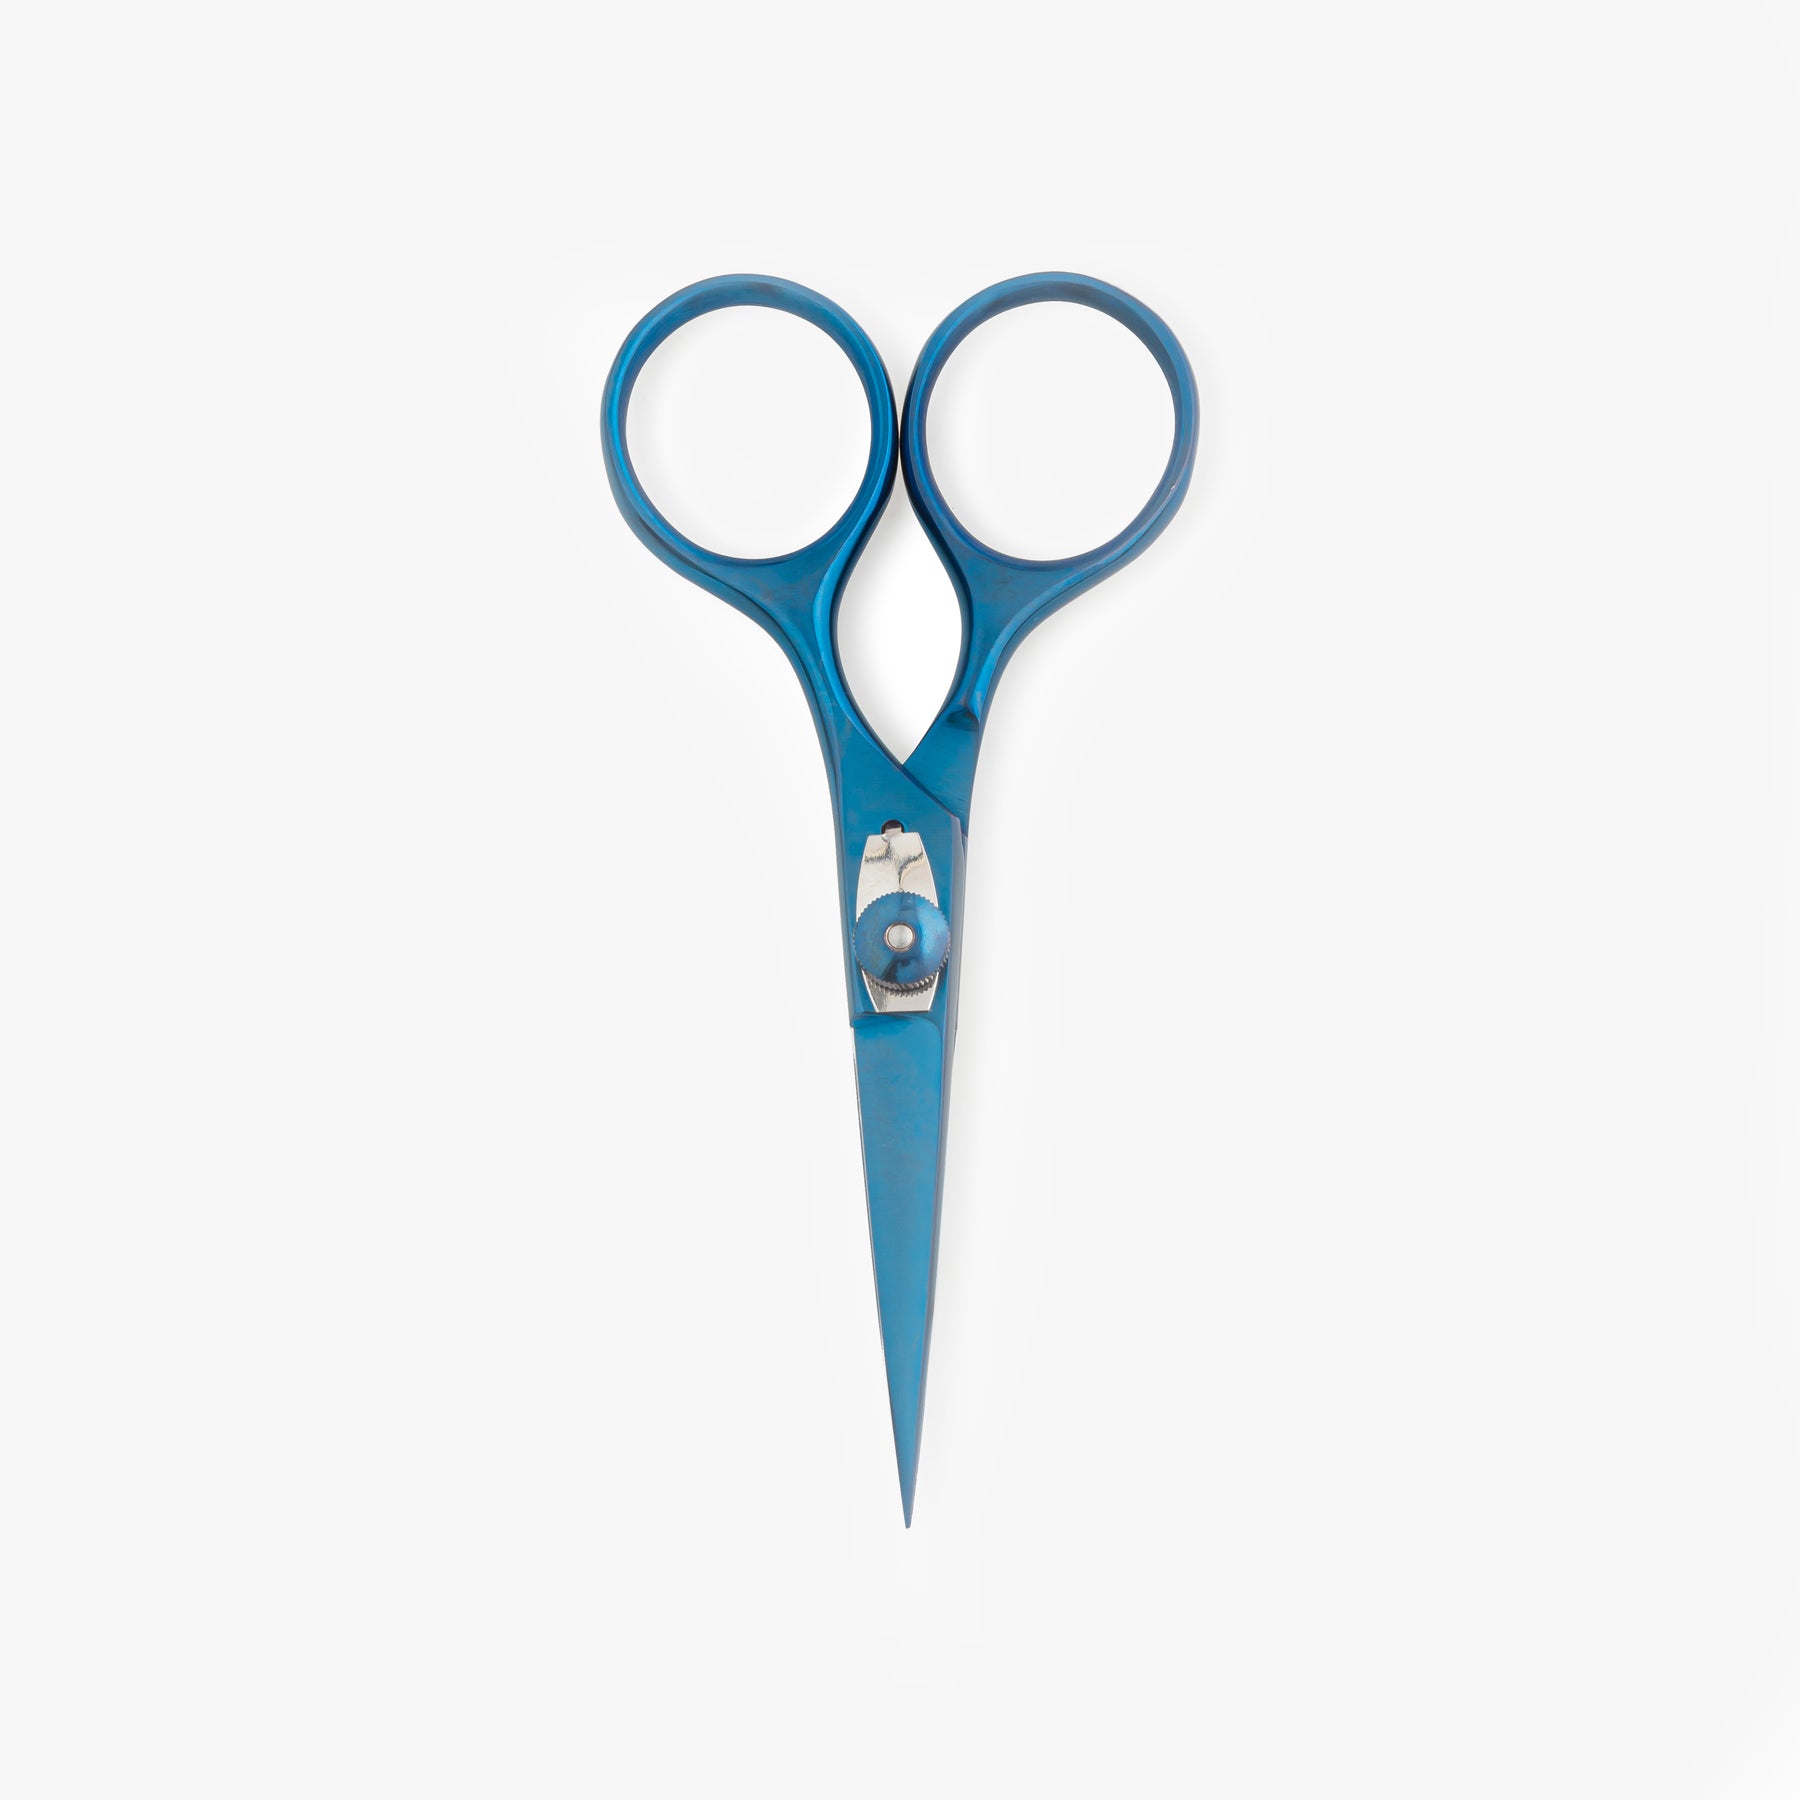 SuperSharp Kitchen Scissors